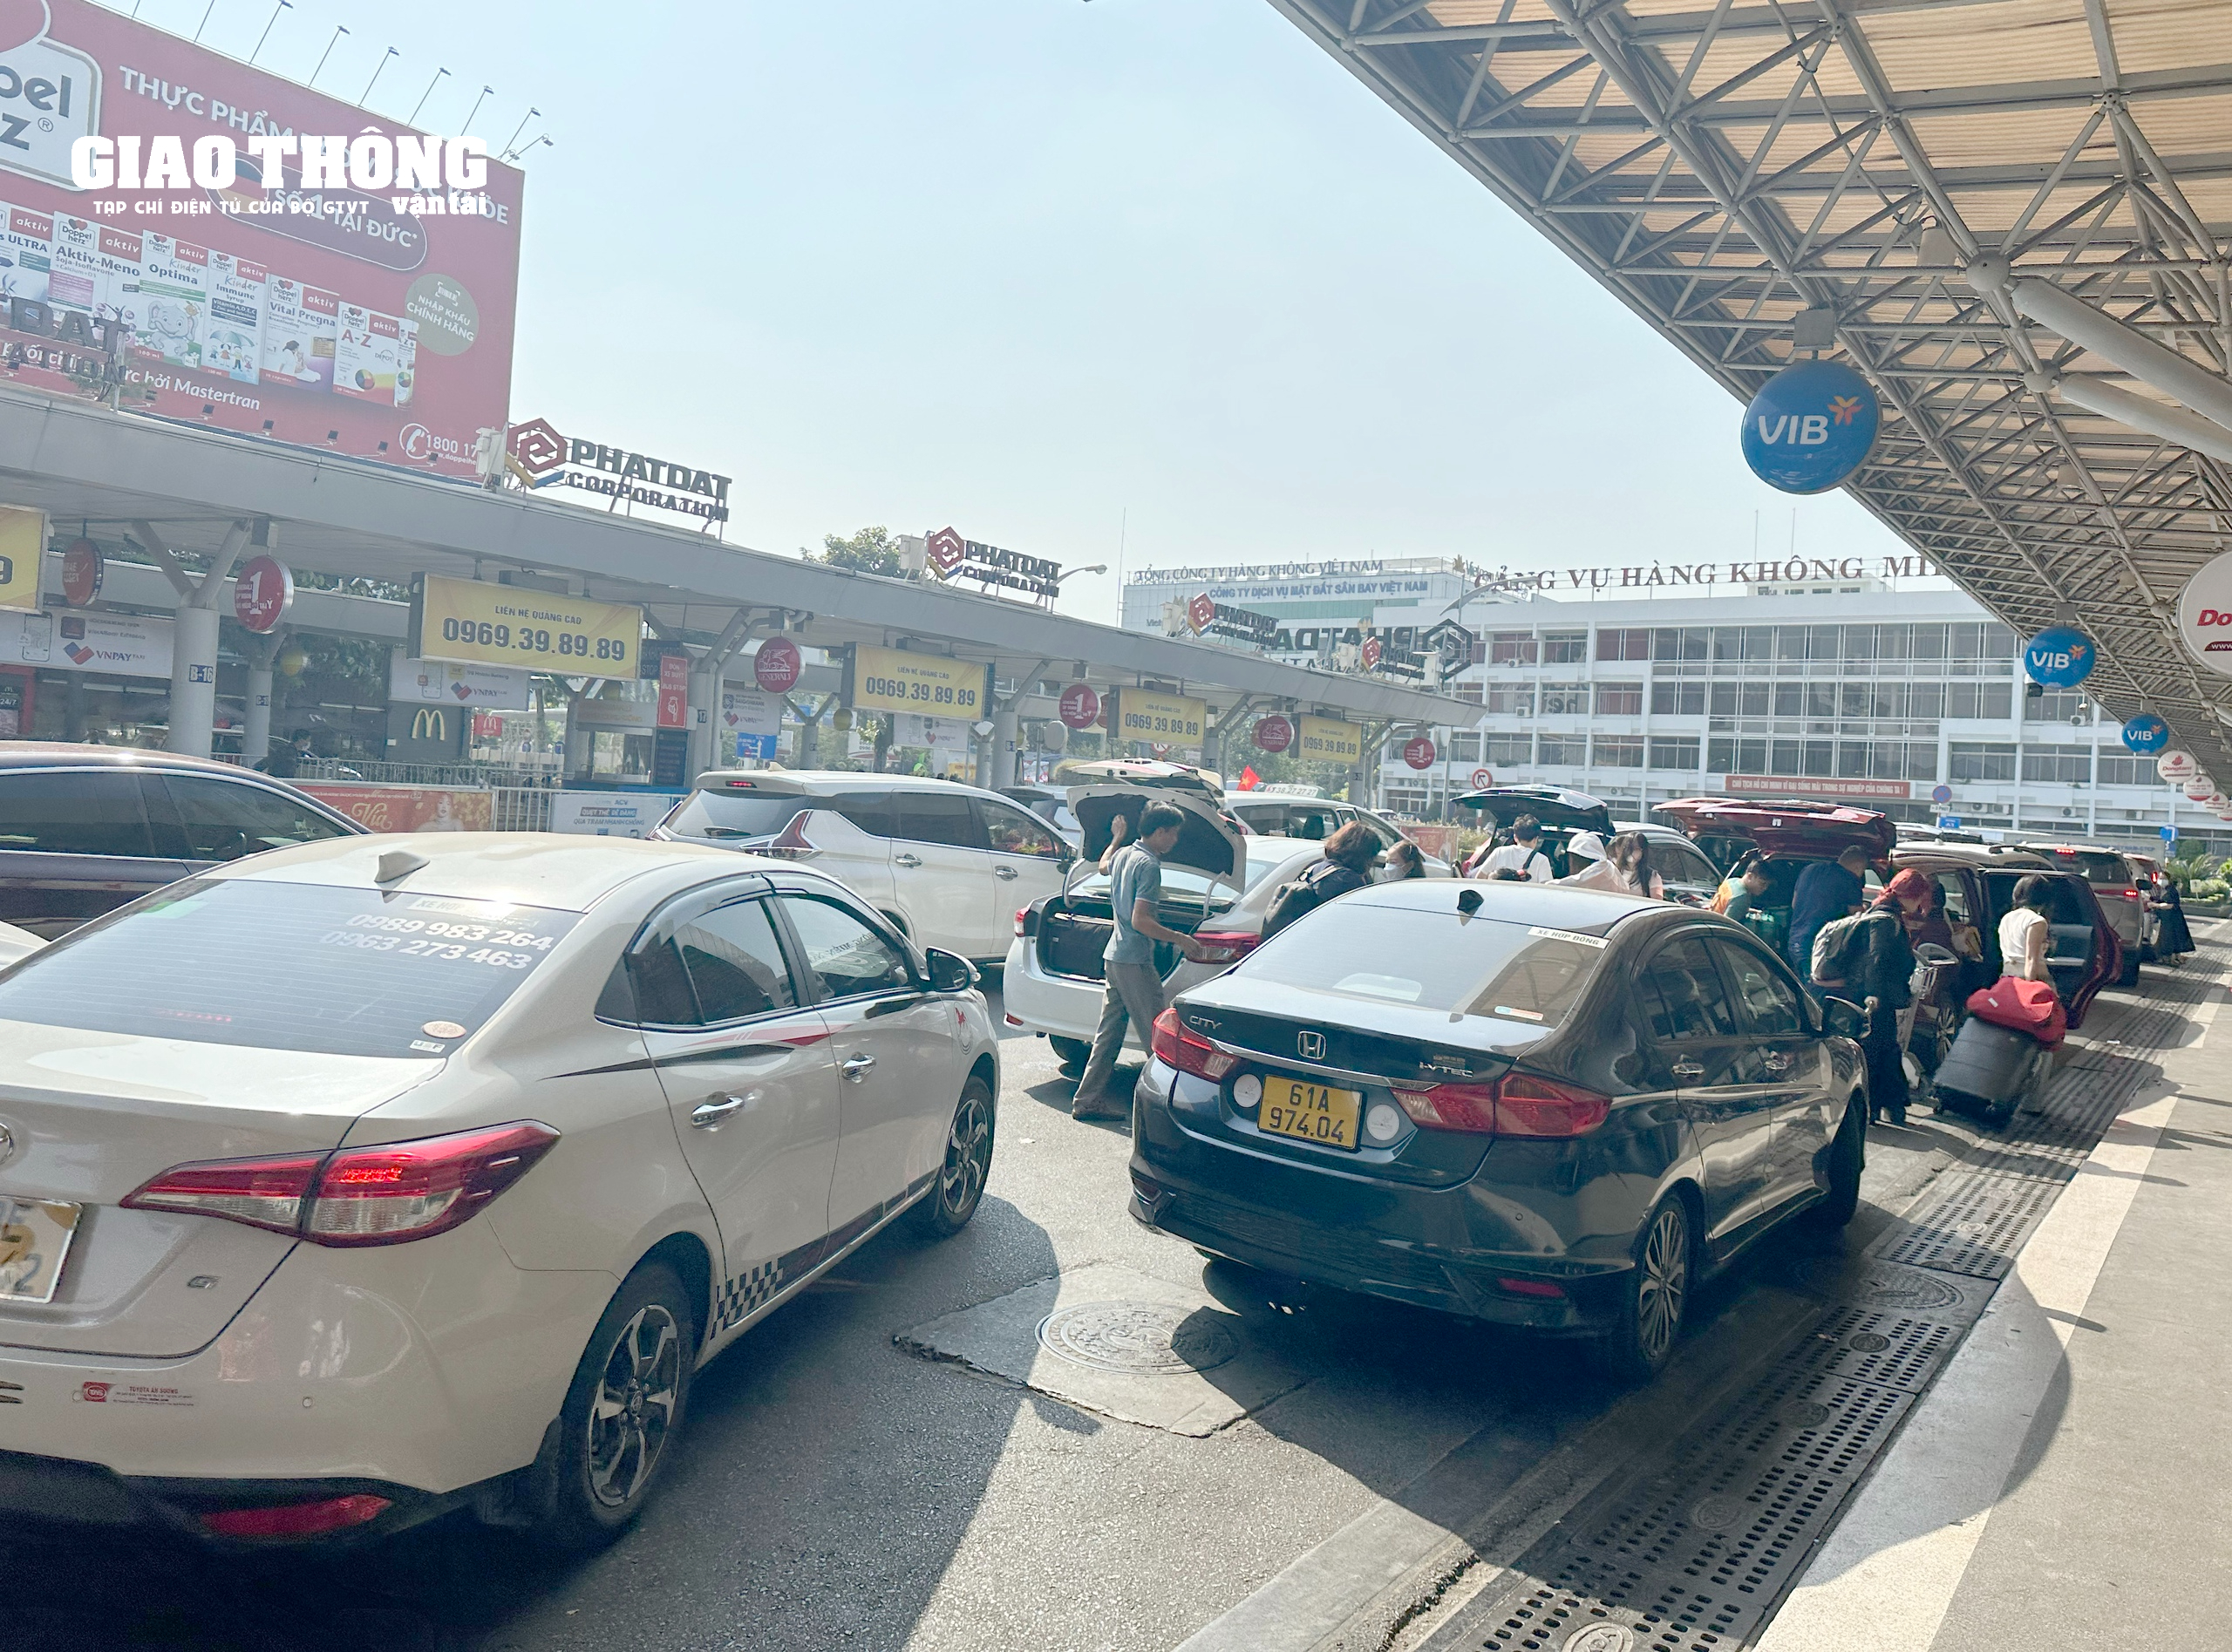 Hàng nghìn người dân xếp hàng chờ làm thủ tục tại sân bay Tân Sơn Nhất về quê đón Tết- Ảnh 2.